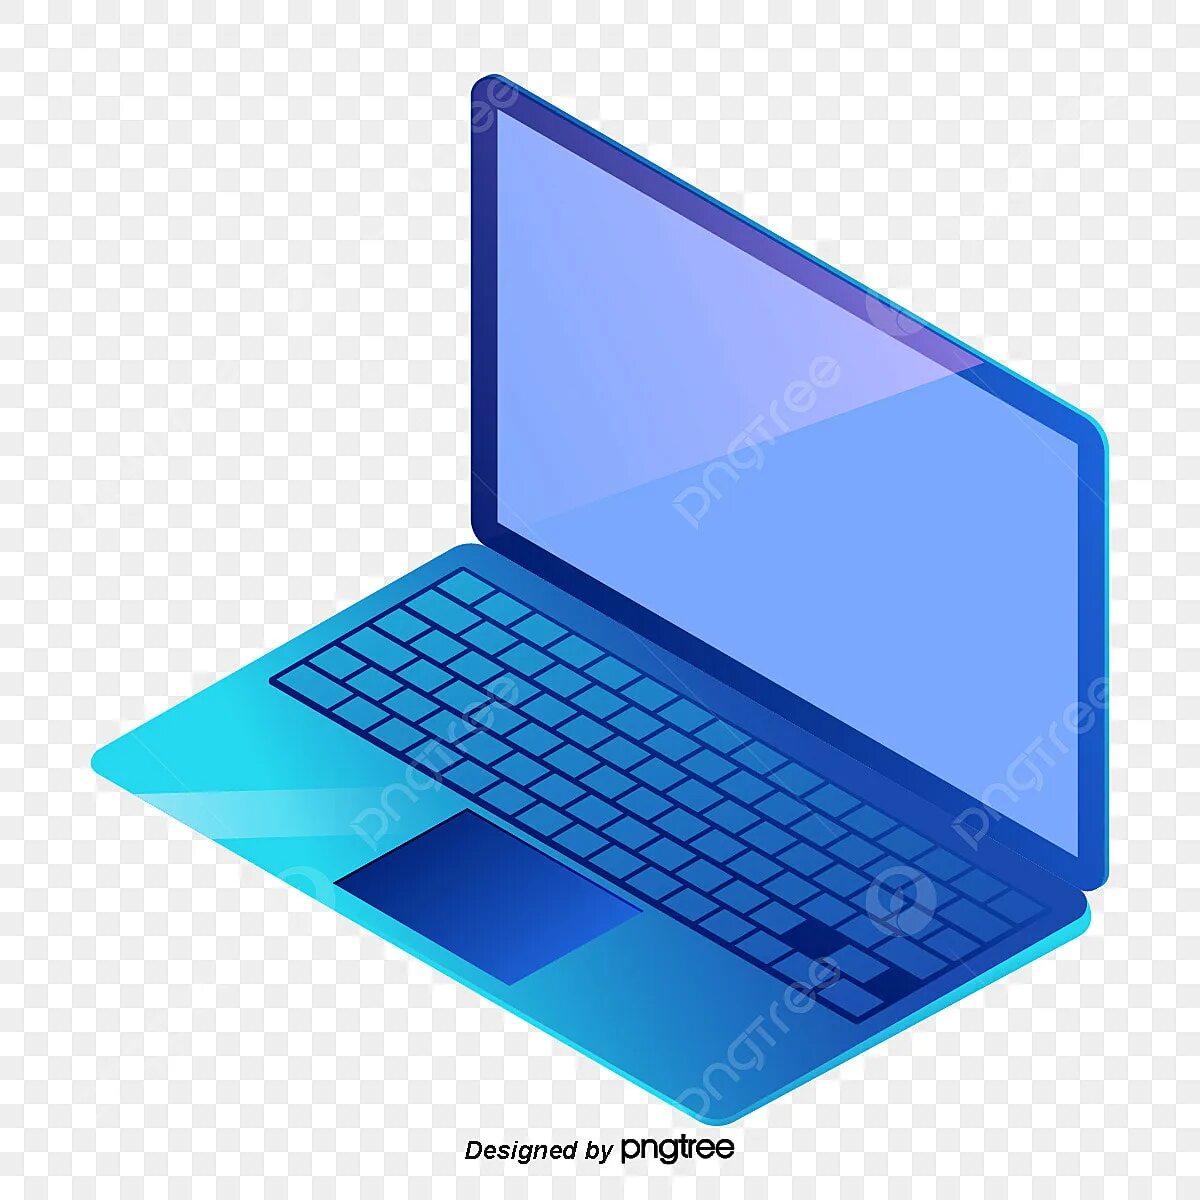 Синий ноутбук. Синий компьютер. Голубой ноут. Ноутбук голубого цвета. Ноутбук на синем фоне.